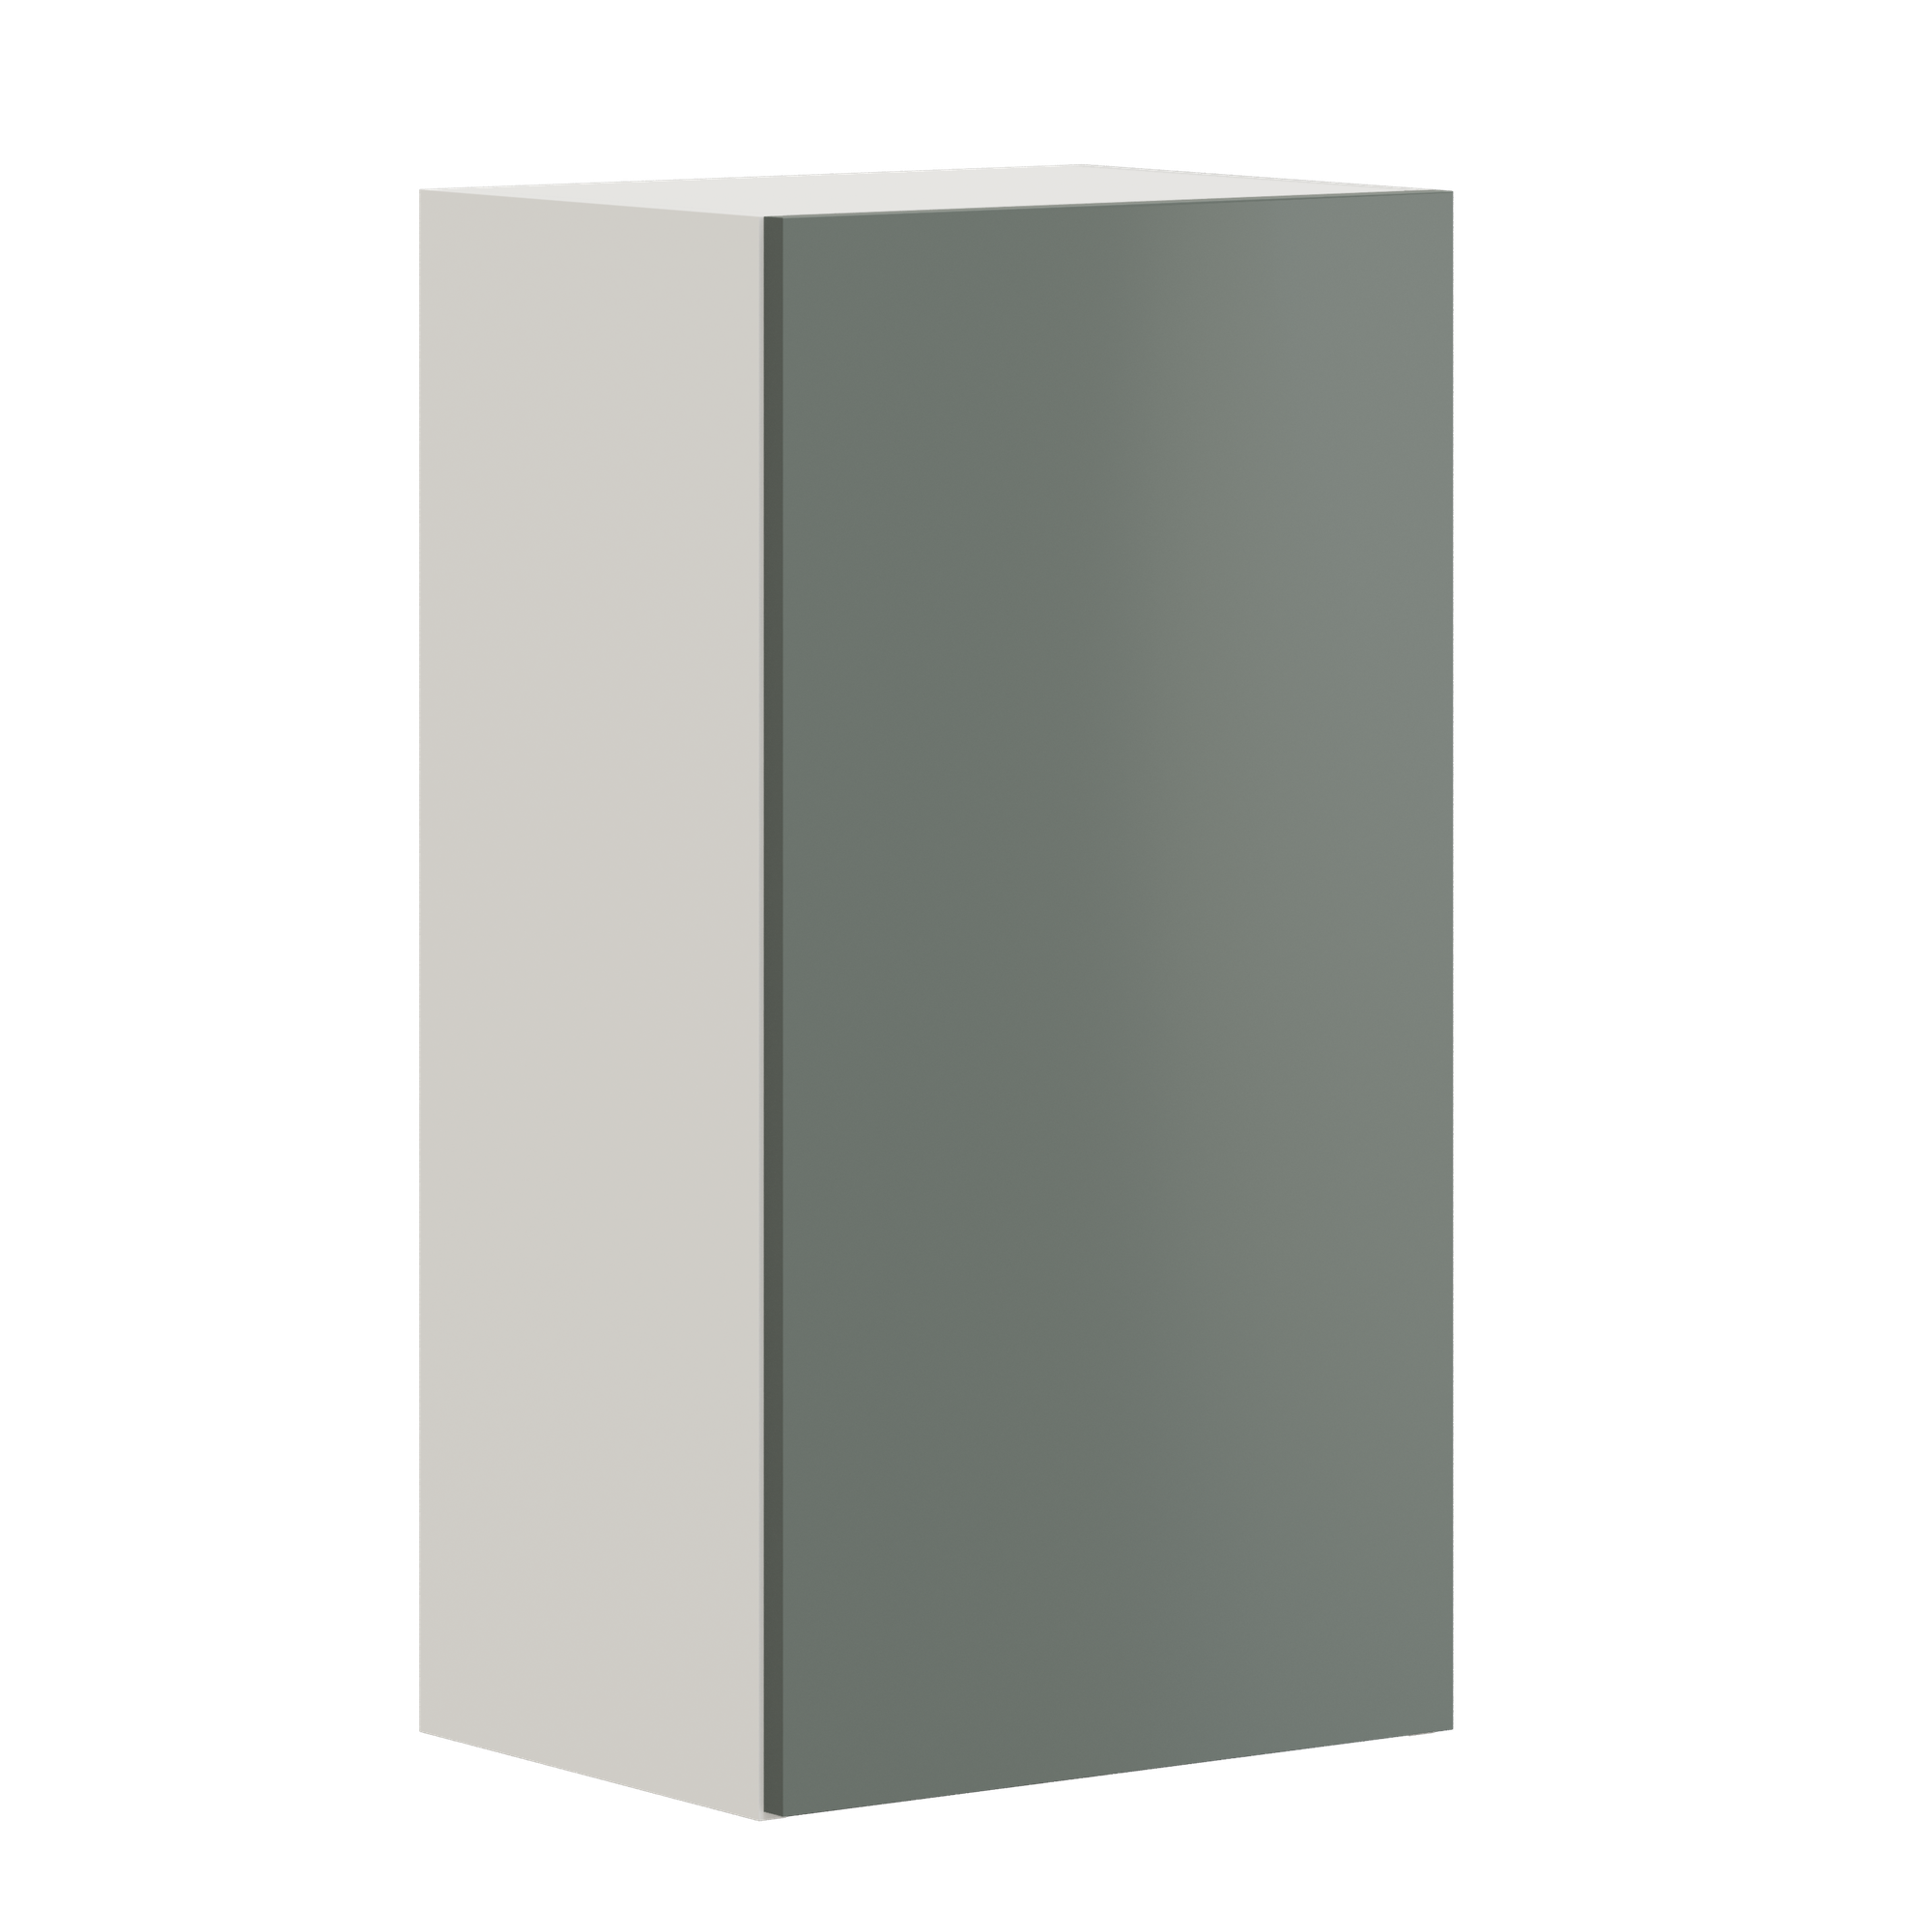 Кухонный модуль навесной шкаф Pragma Elinda с дверцей, ШхГхВ 40х31х75 см, ЛДСП, дымчатый зеленый